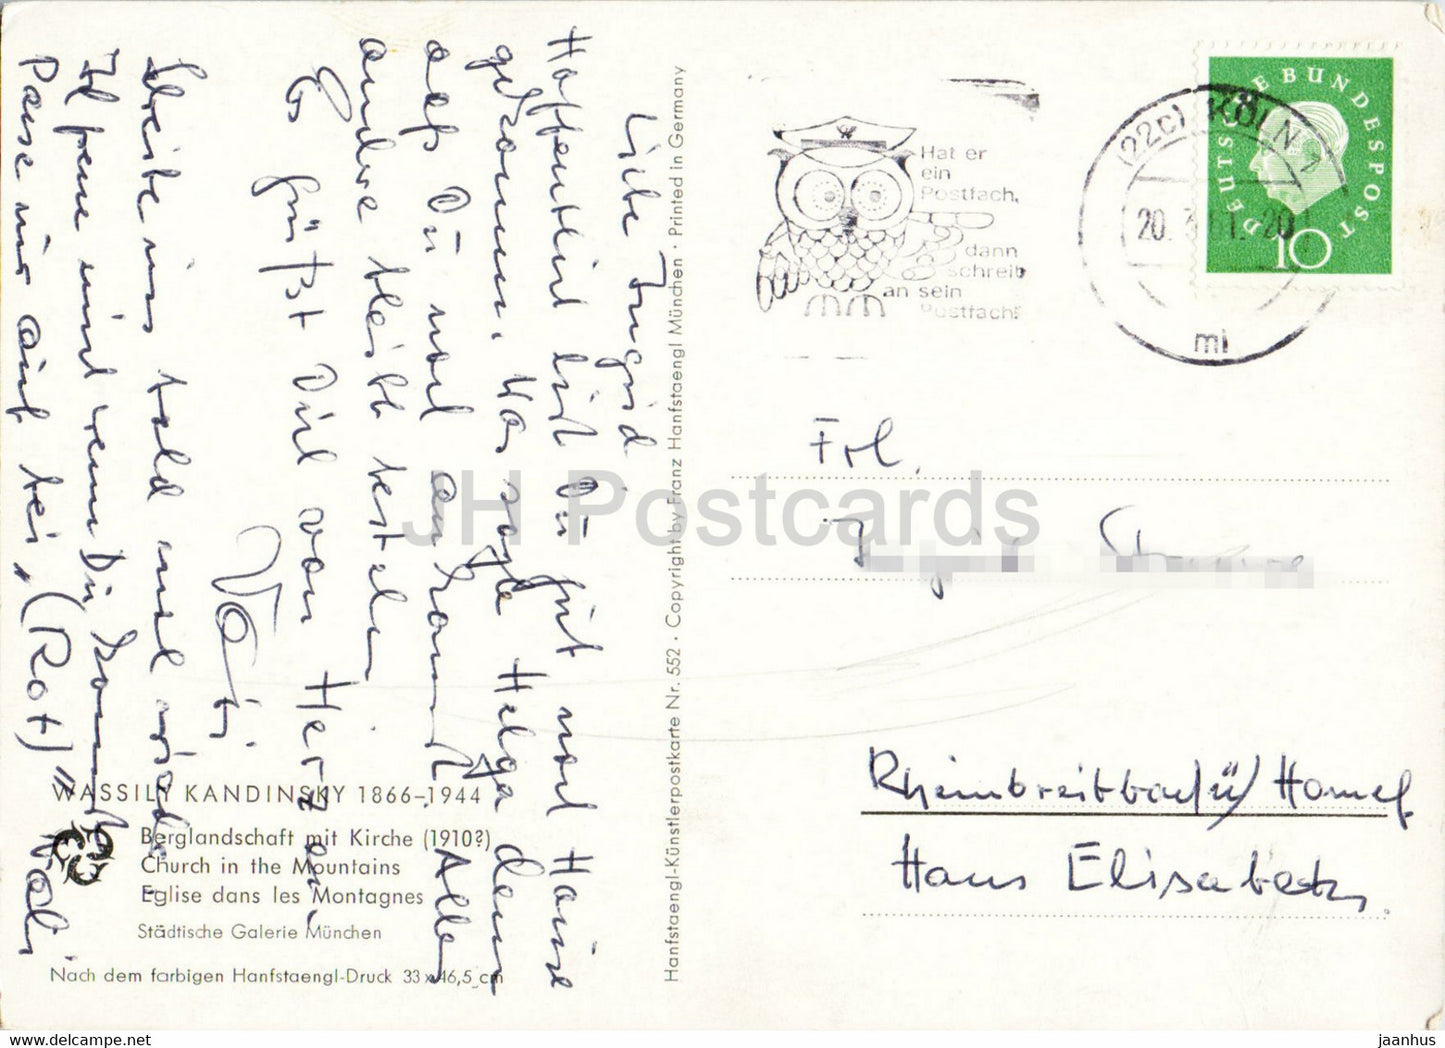 Gemälde von Wassily Kandinsky – Berglandschaft mit Kirche – Russische Kunst – alte Postkarte – 1961 – Deutschland – gebraucht